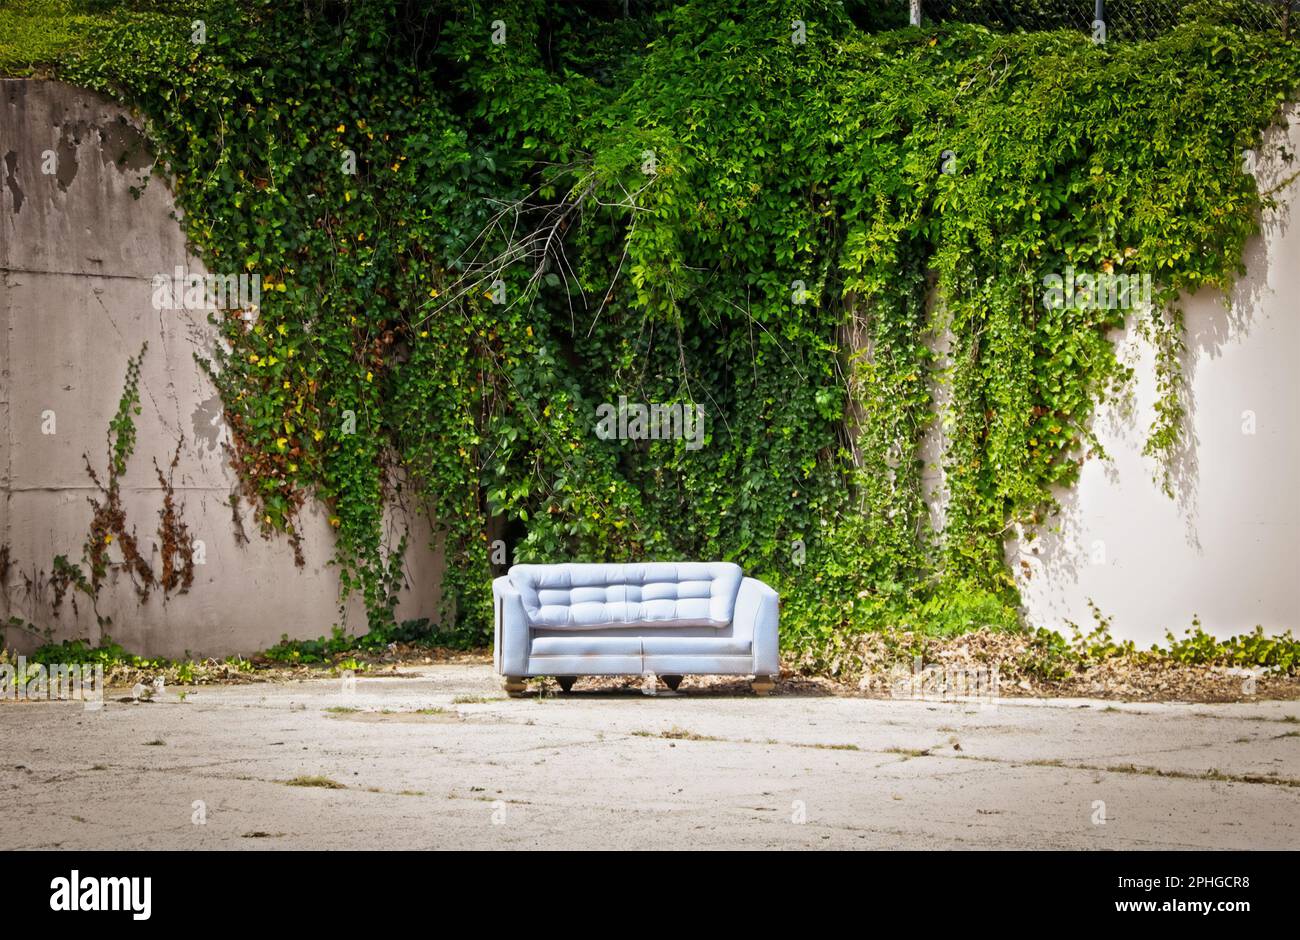 Vecchio divano abbandonato seduto in un angolo di parcheggio in cemento con alto muro di cemento coperto di viti sullo sfondo - sembra un set di photoshoot Foto Stock